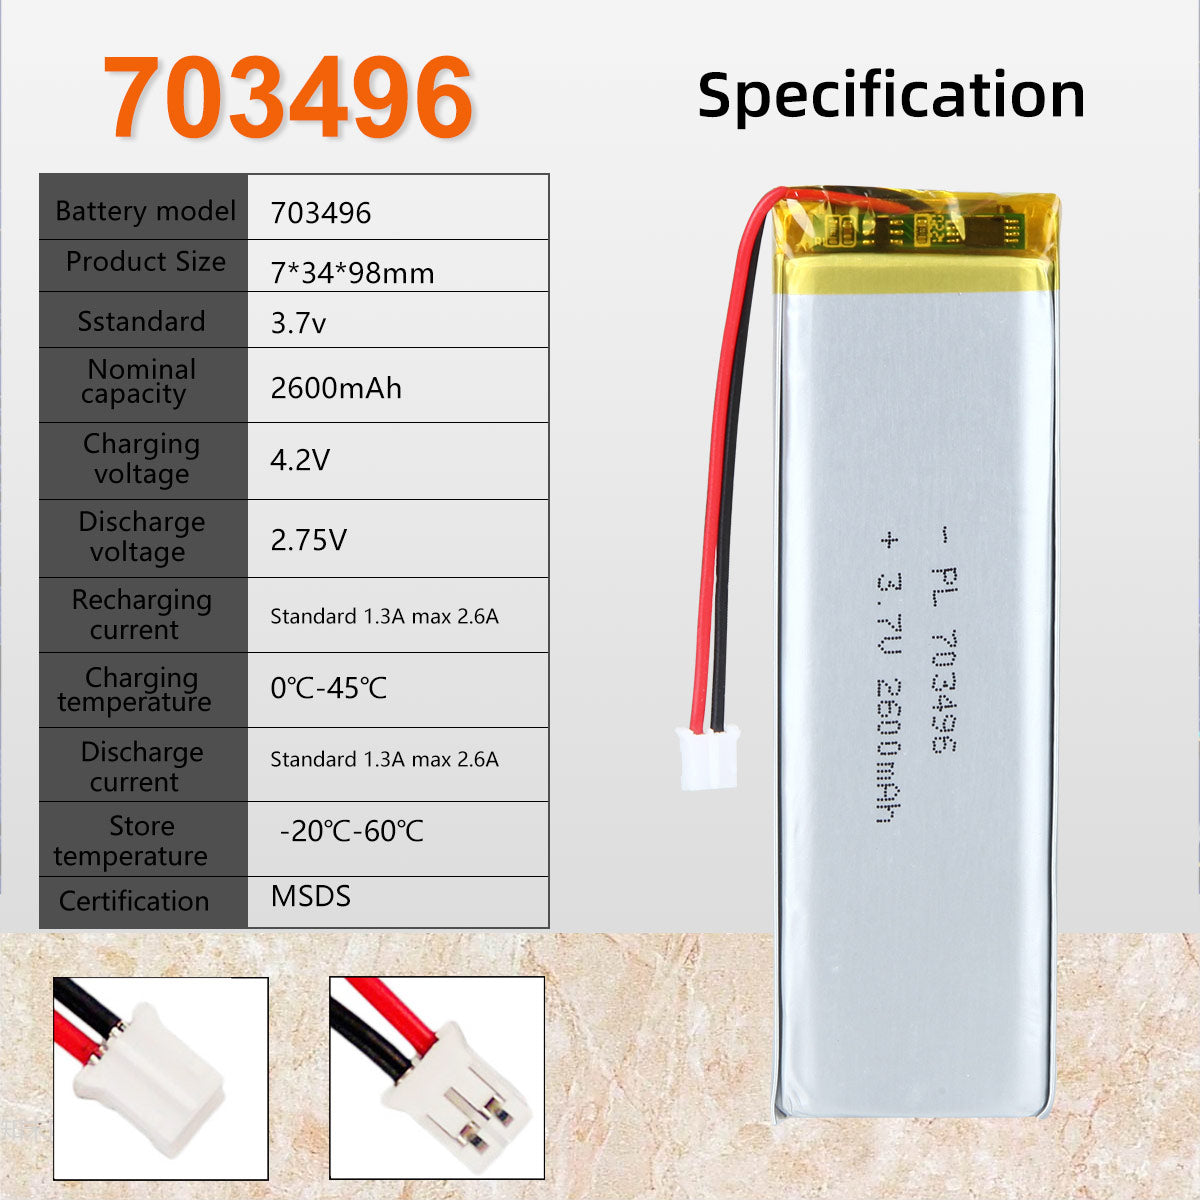 3.7V 2600mAh 703496 Batterie Lithium Polymère Rechargeable Longueur 98mm